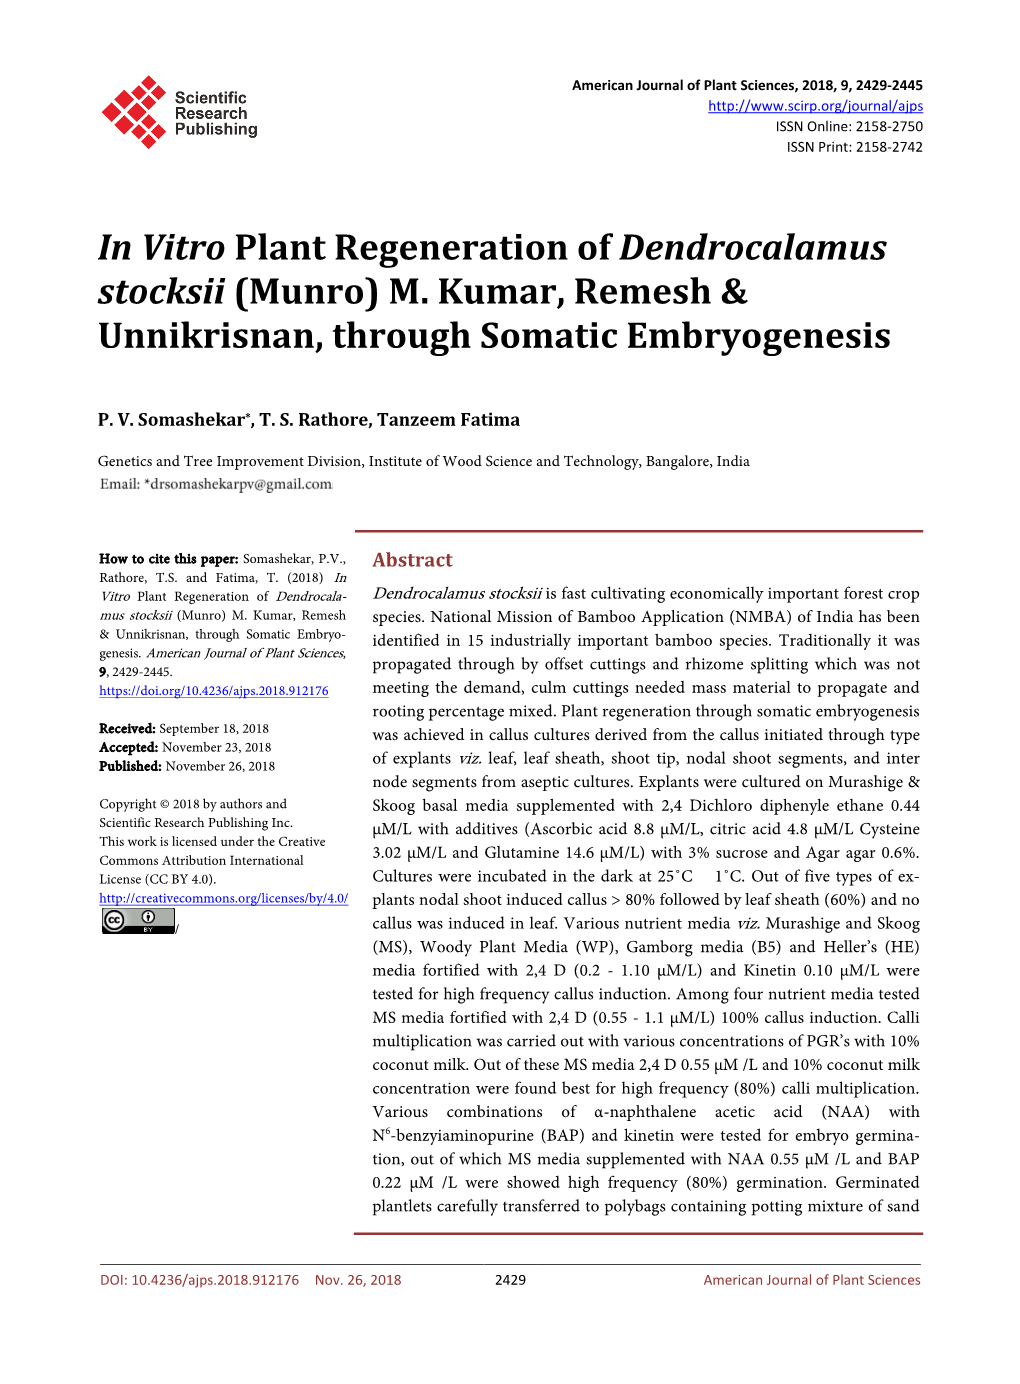 In Vitro Plant Regeneration of Dendrocalamus Stocksii (Munro) M